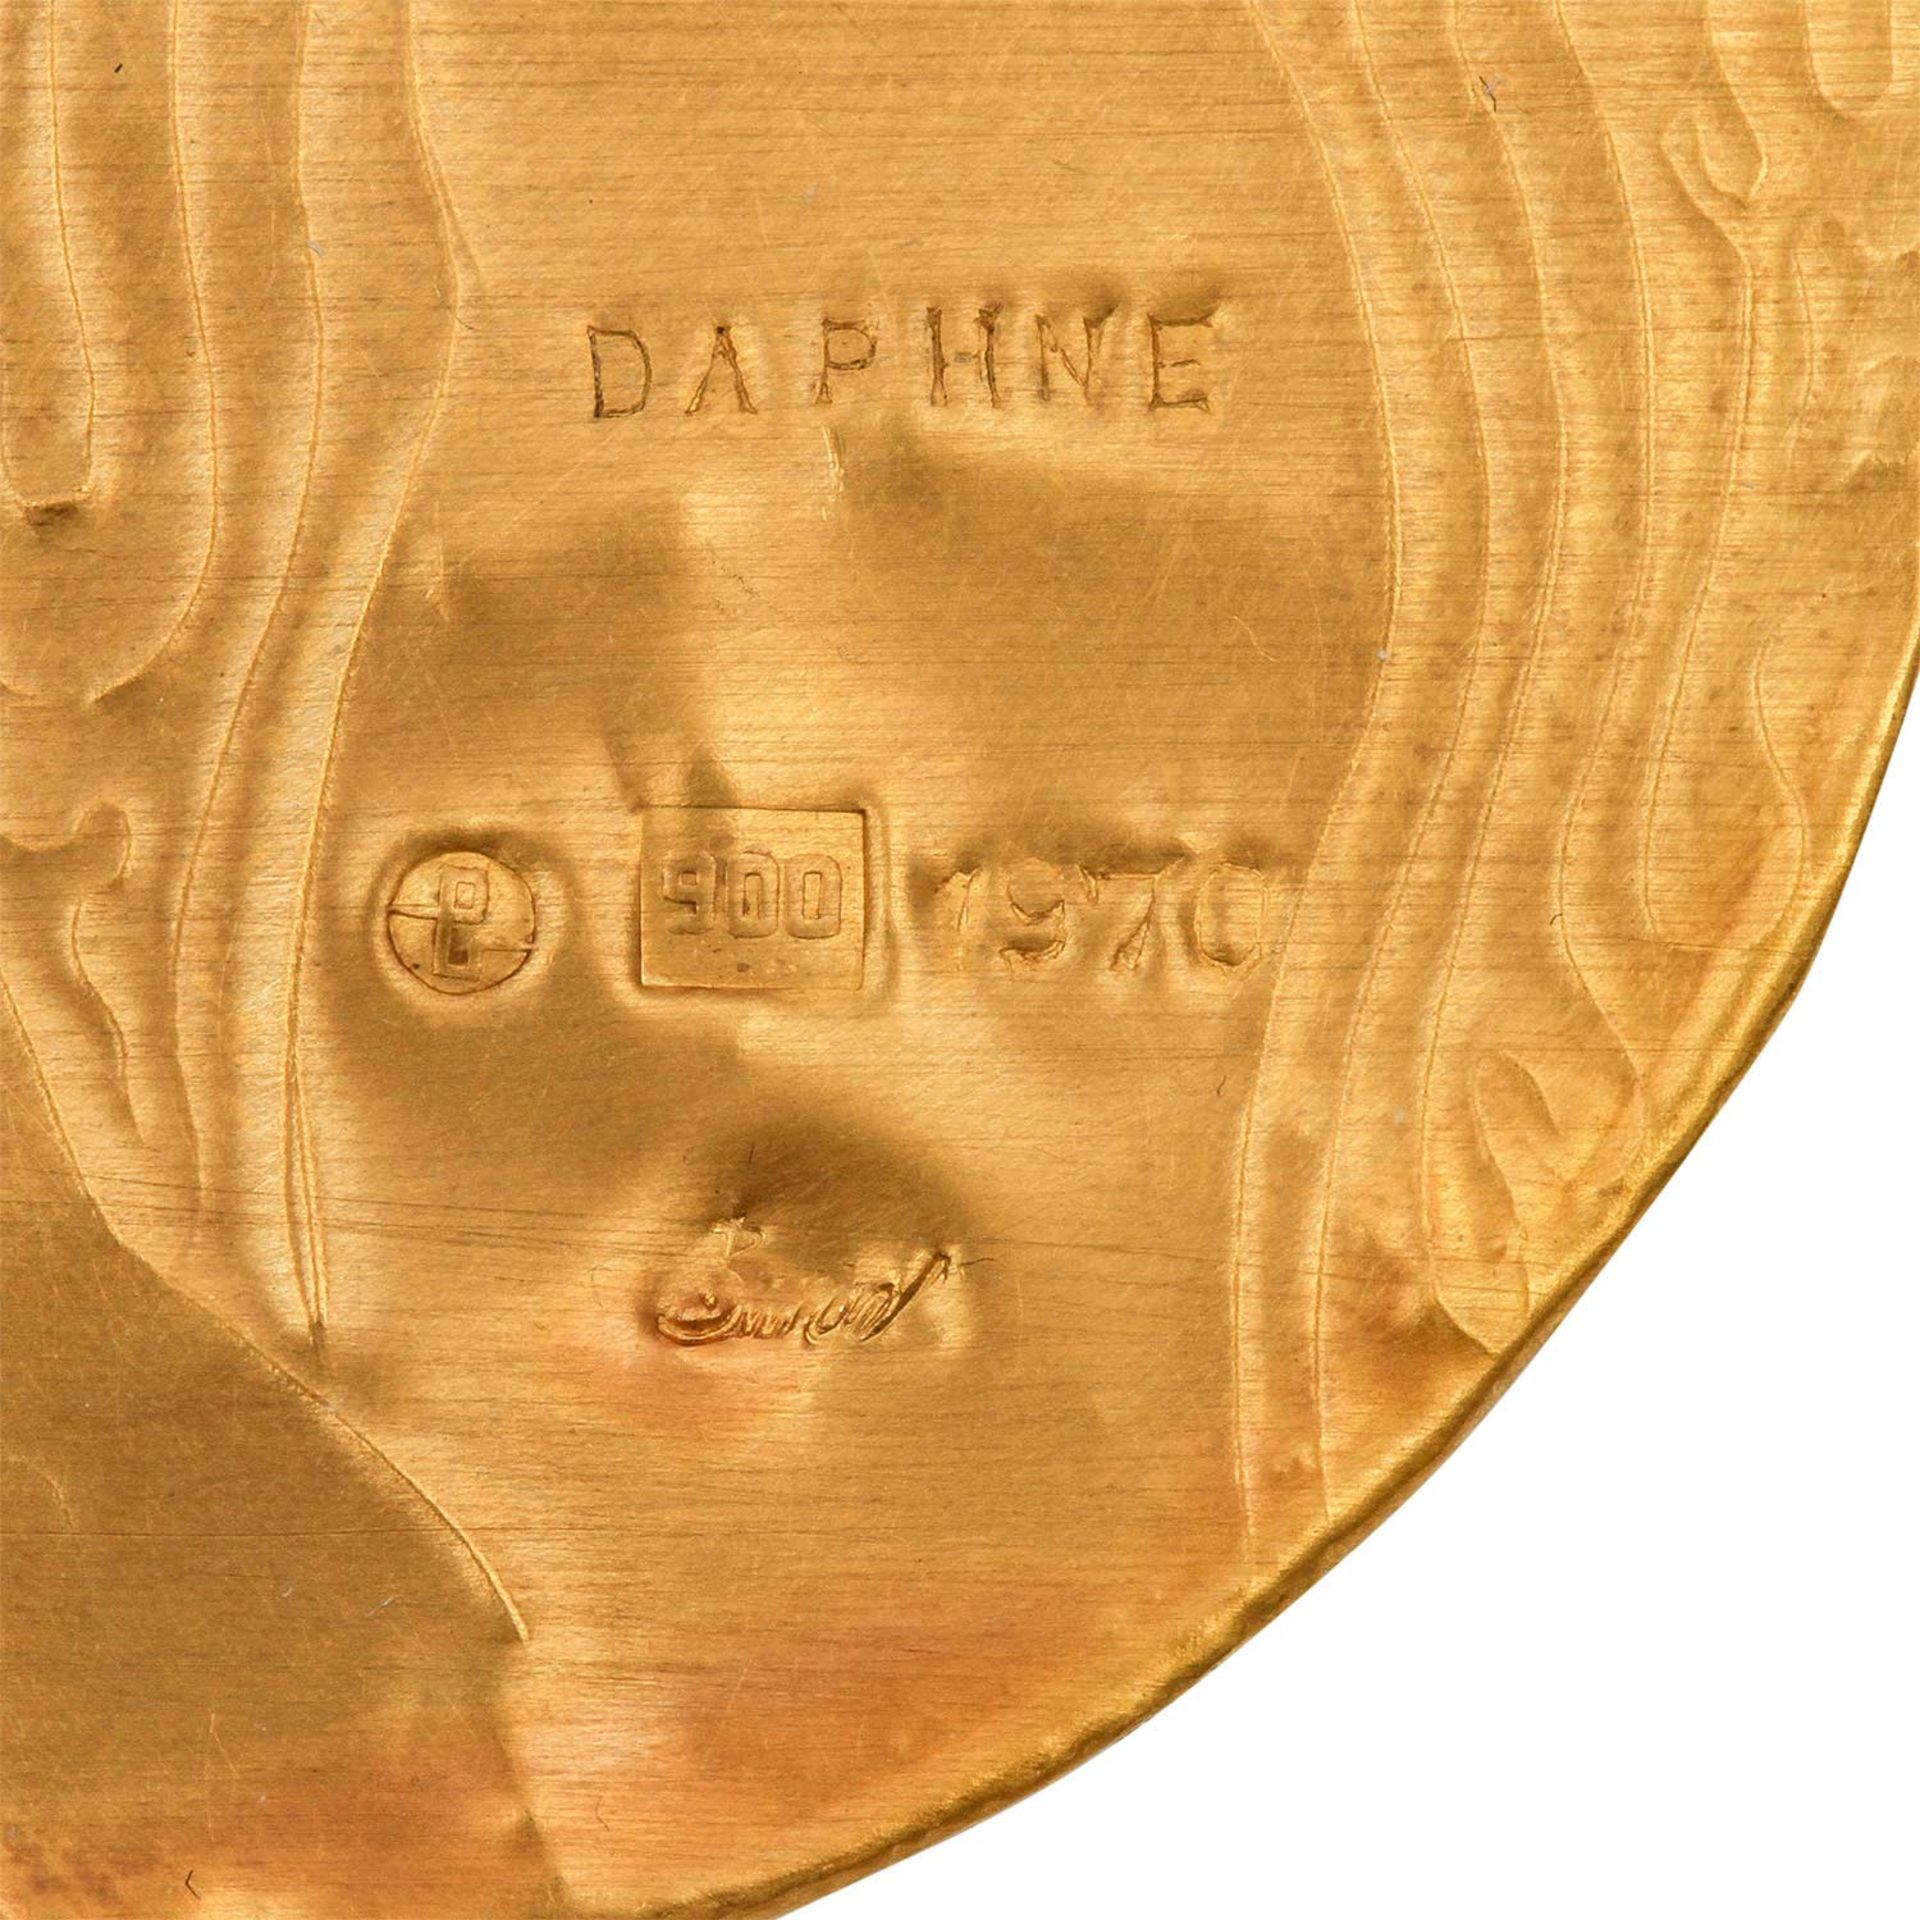 Goldminiatur "Daphne" (1970) von E. BURGEL,Gold 900, 1 Saphir, getrieben + ziseliert, auf Acryl, - Bild 4 aus 4